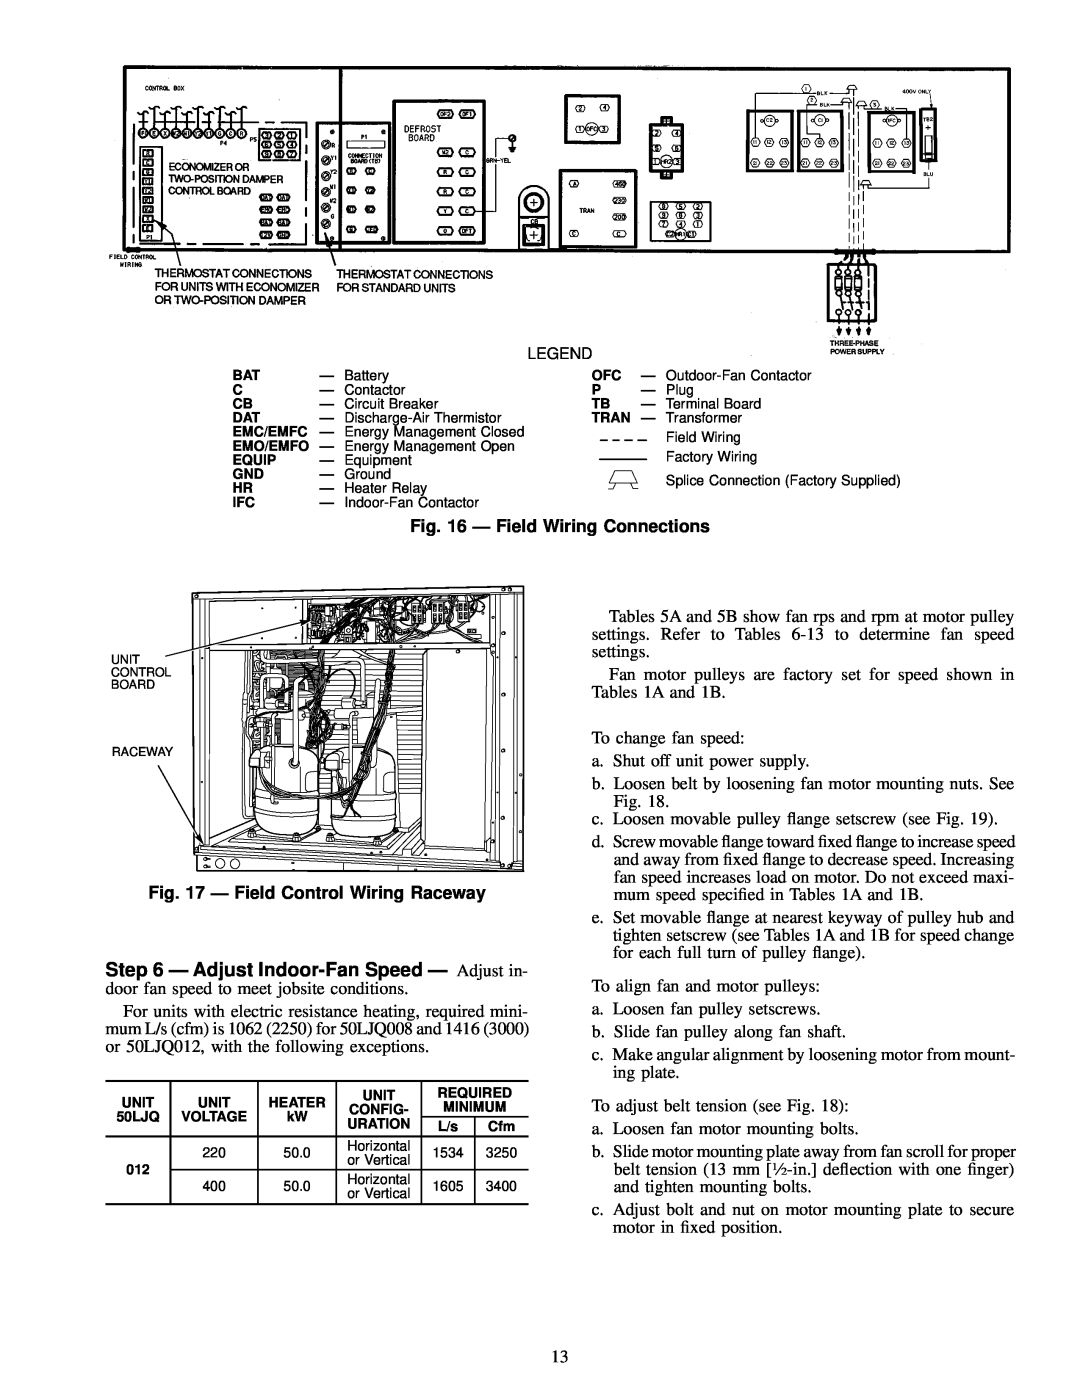 Carrier 012, 50LJQ008 installation instructions Ð Field Wiring Connections, Ð Field Control Wiring Raceway 